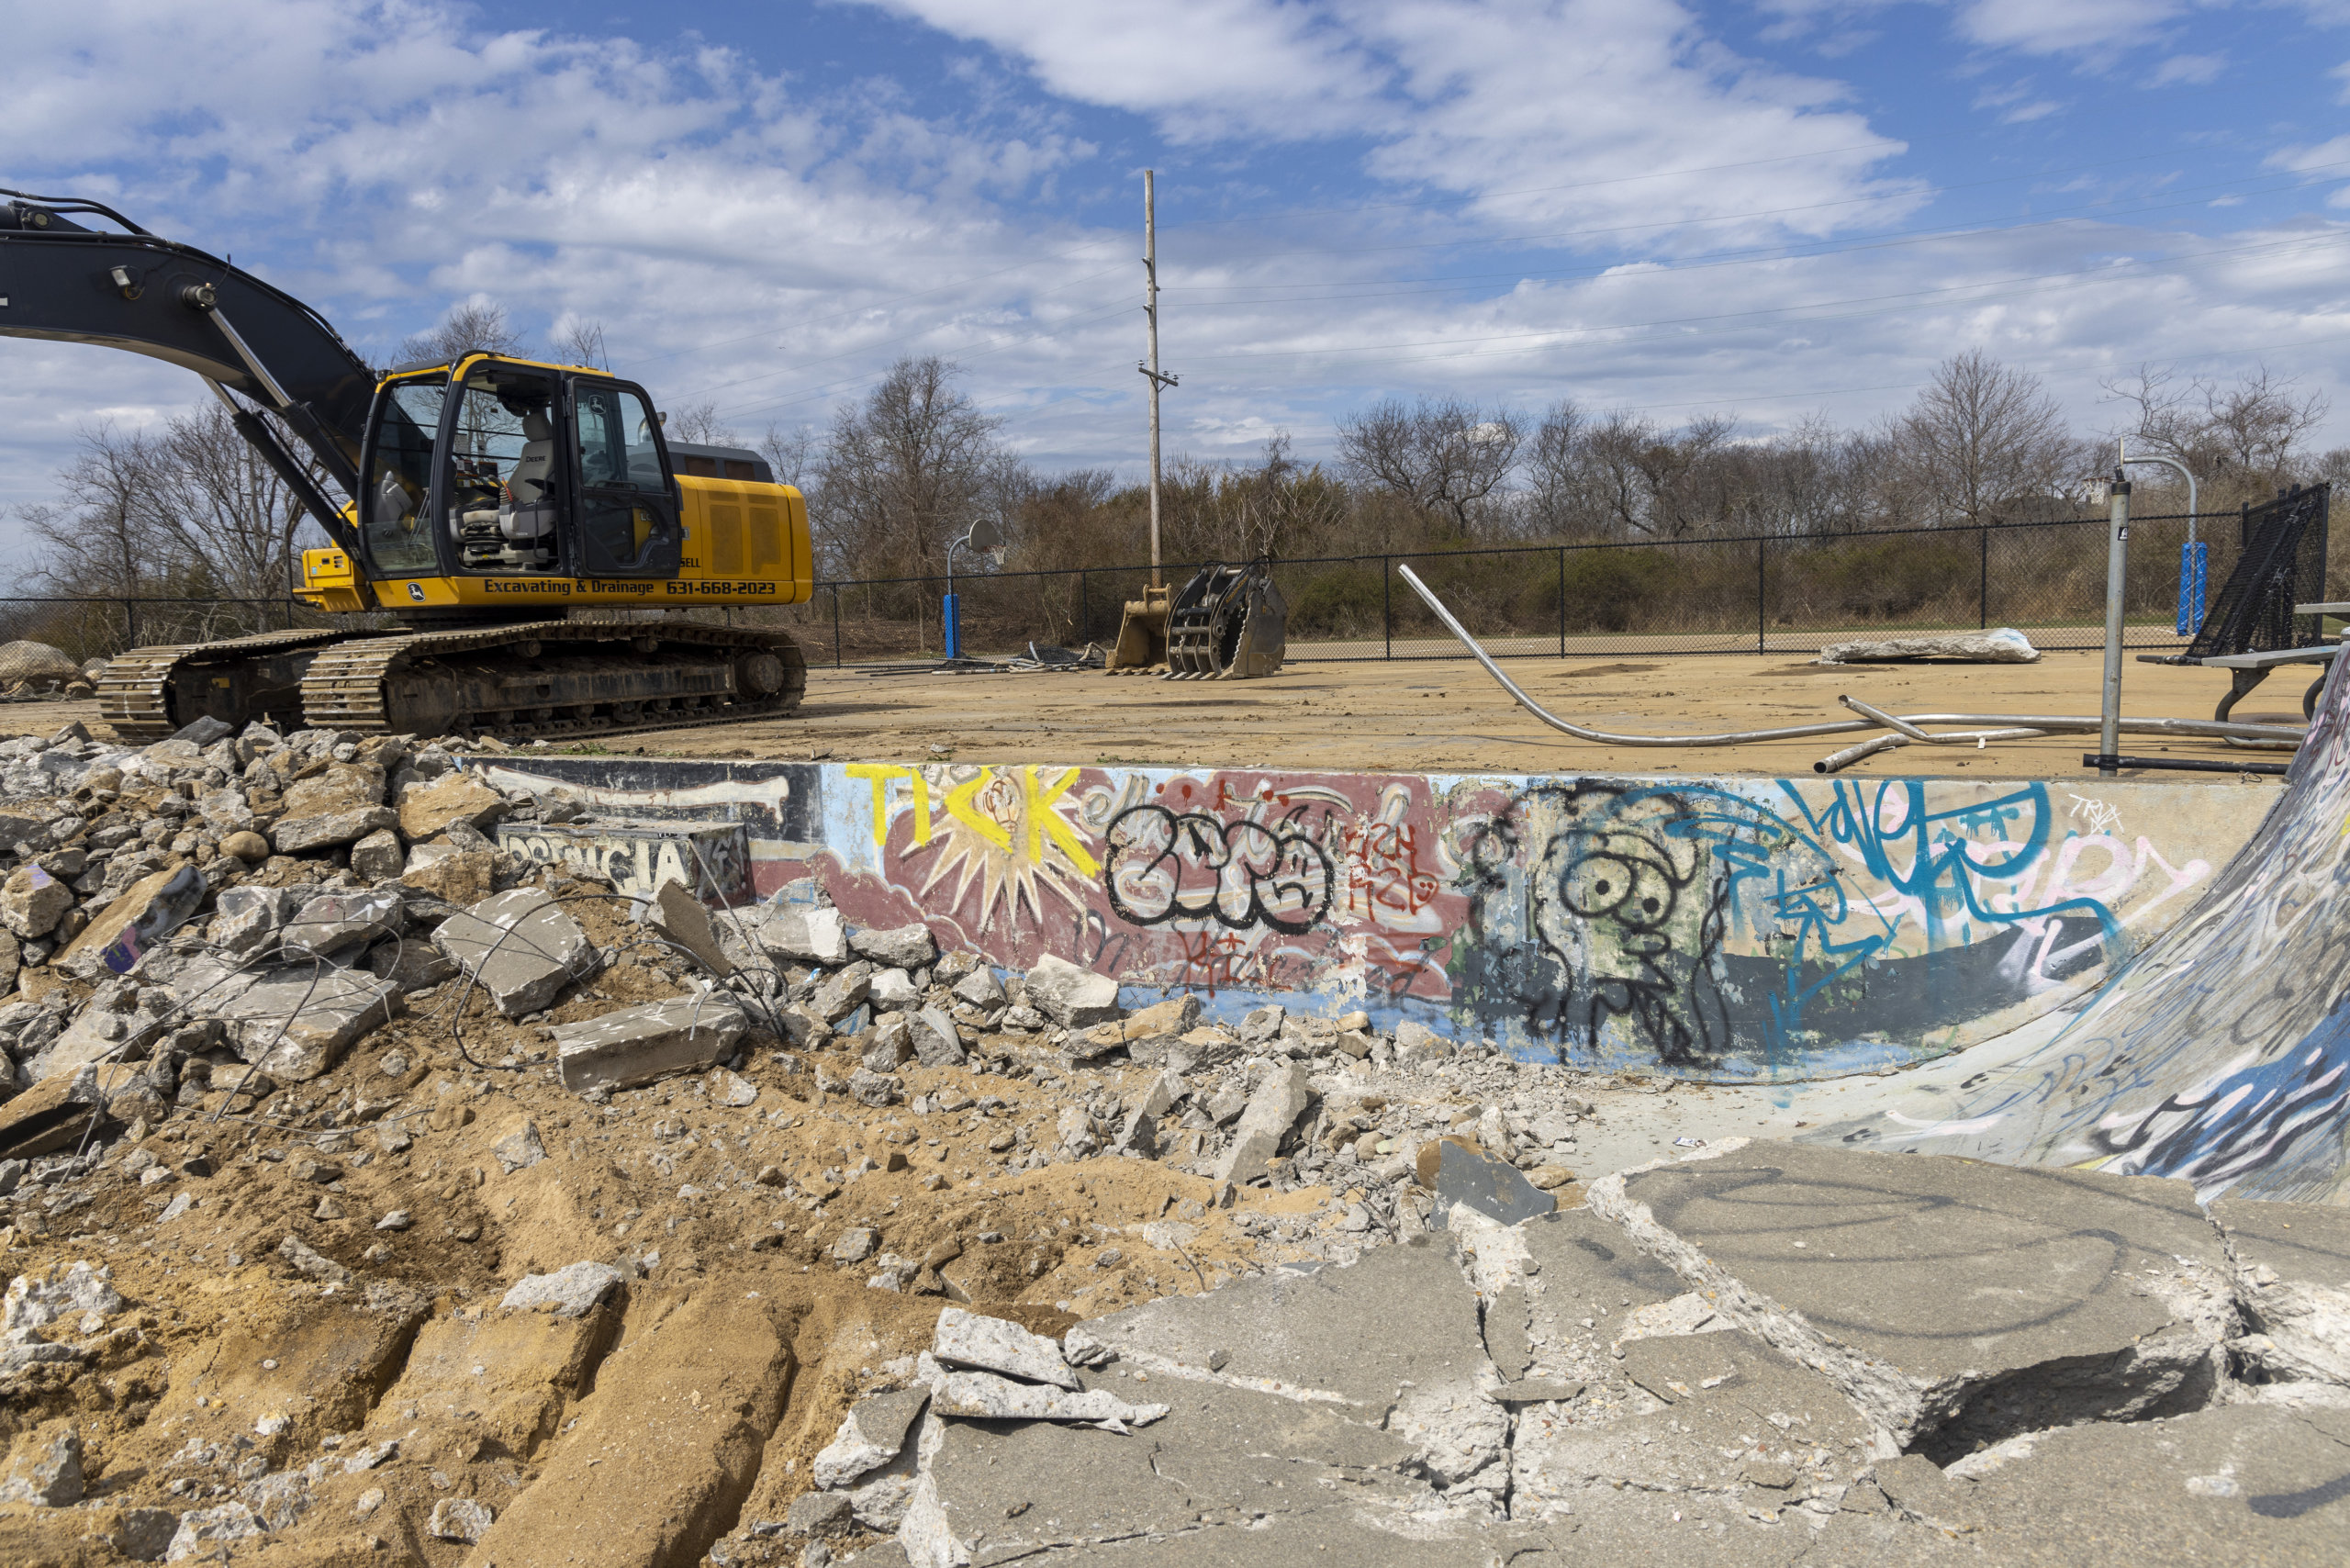 Tearing down the old Montauk Skatepark